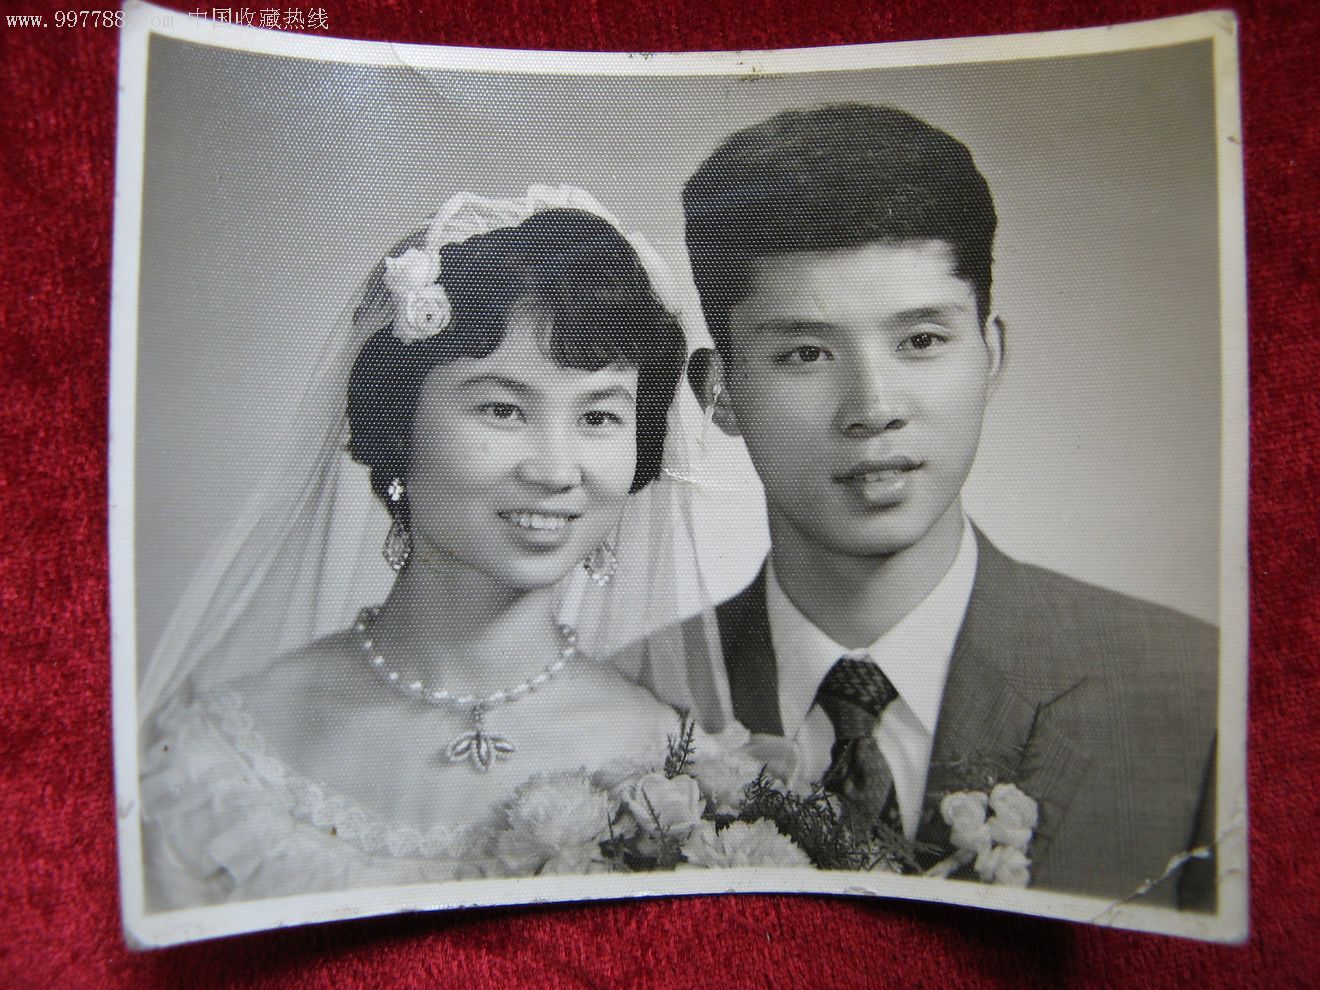 至少20年前的经典黑白照片:结婚照_老照片_亮湖藏苑